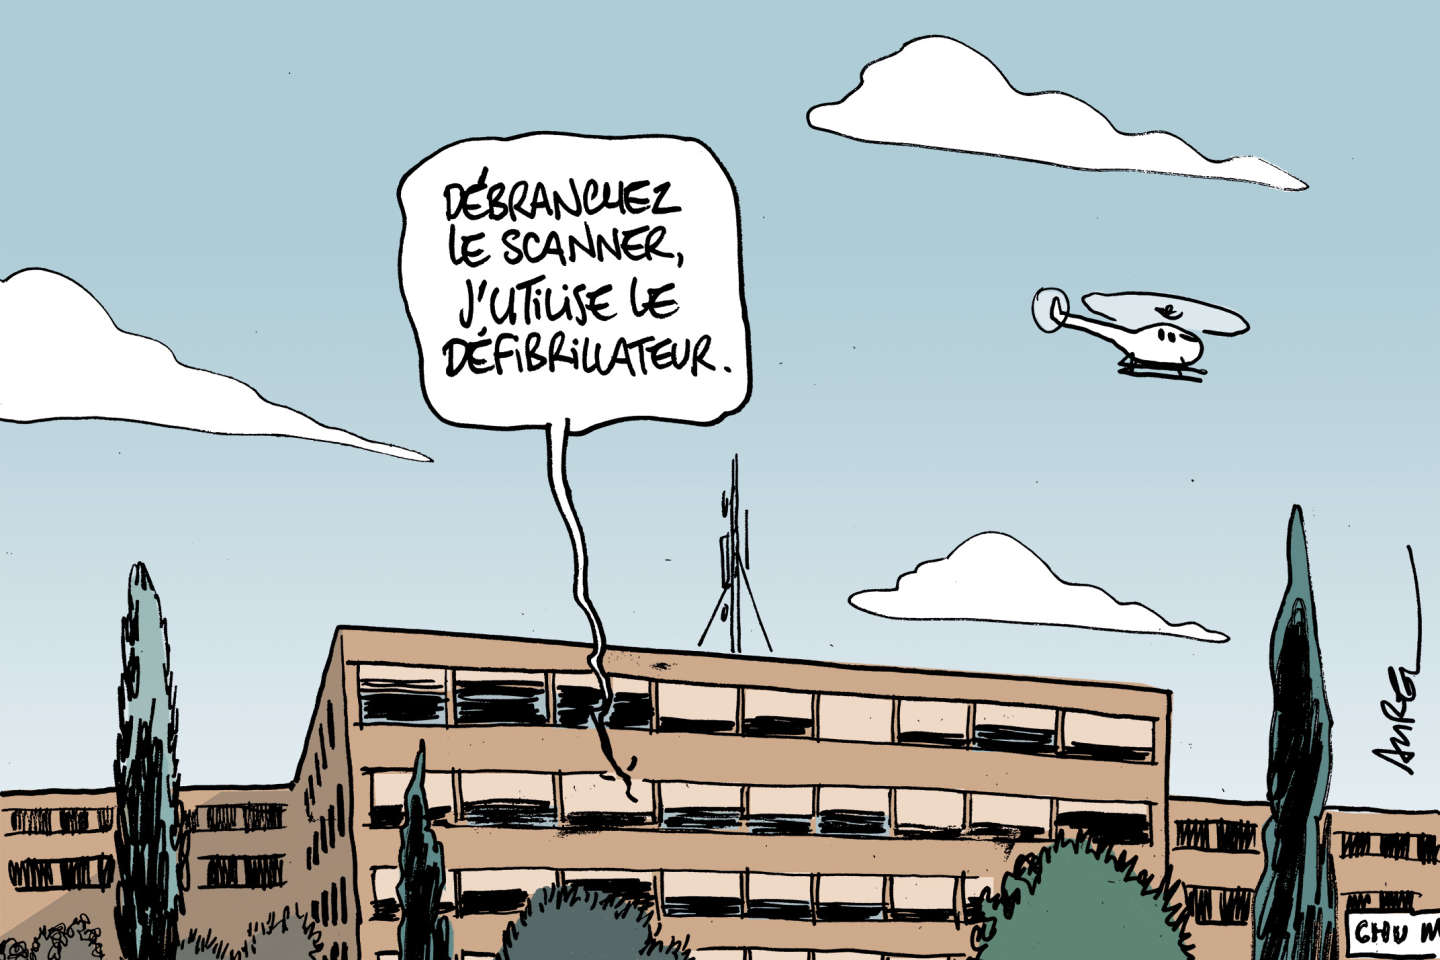 Les hôpitaux français amorcent leur transition verte